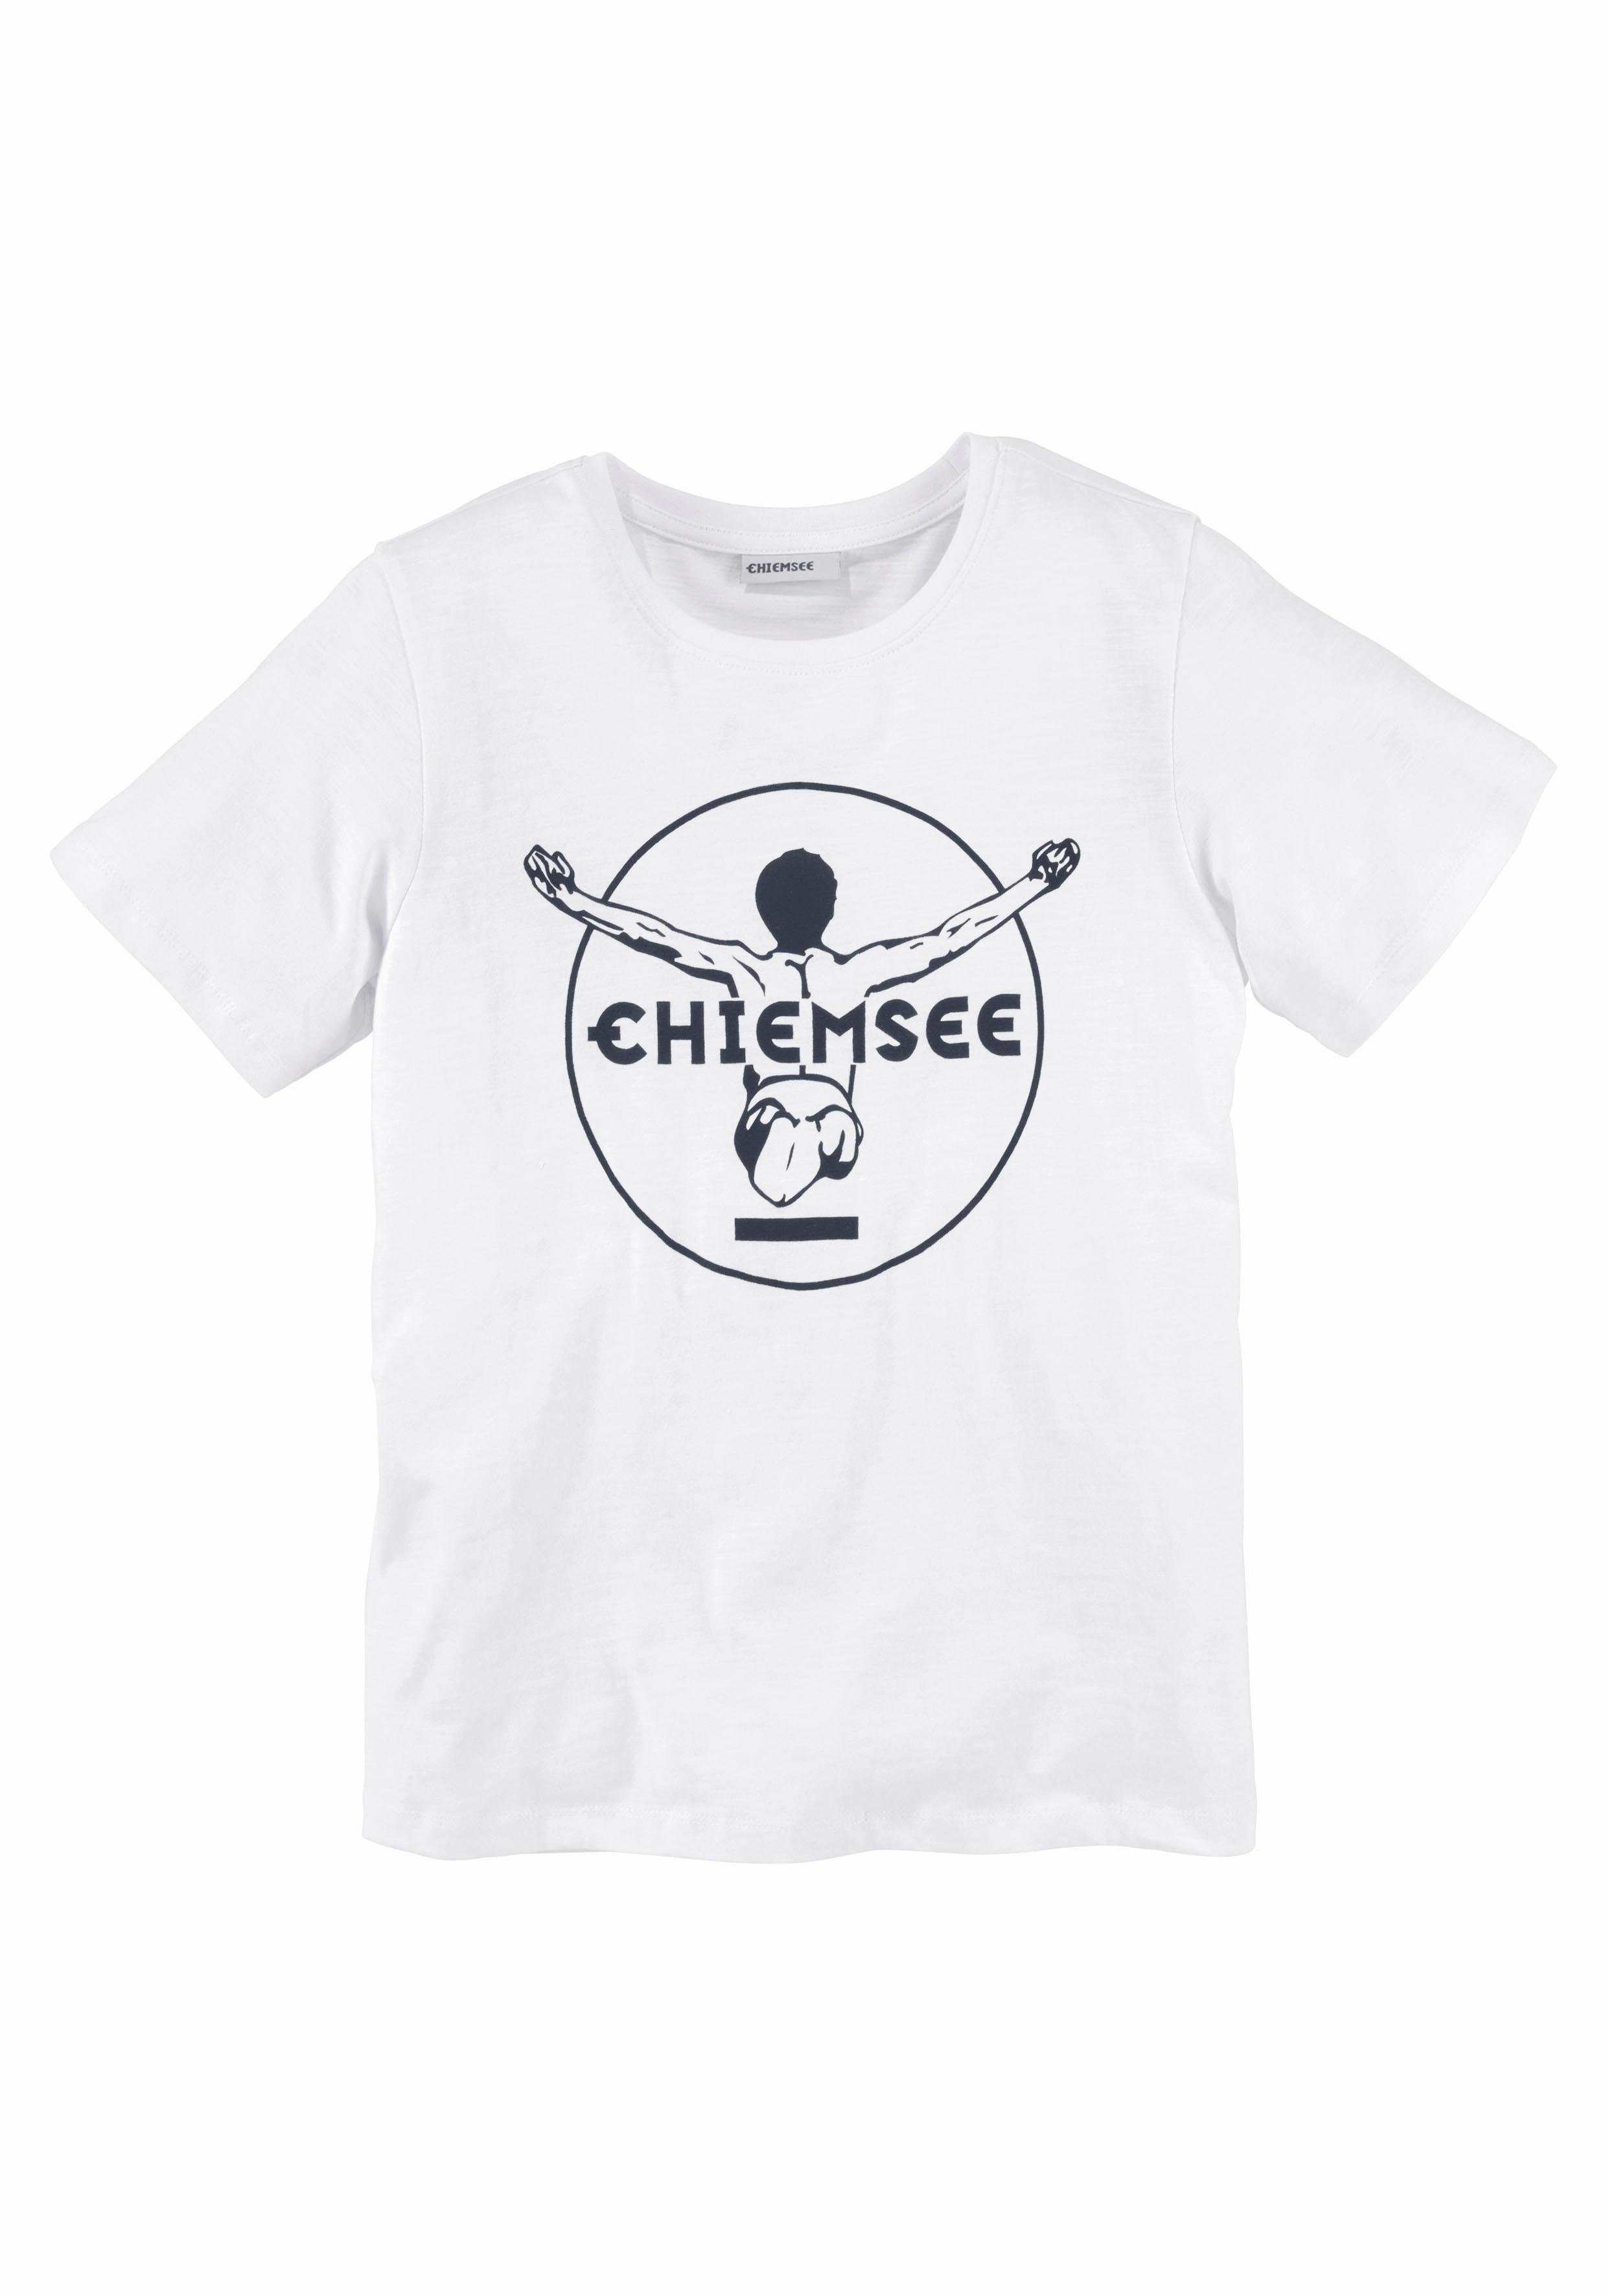 Druck Chiemsee vorn BASIC coolem T-Shirt Mit Logo-Druck, mit